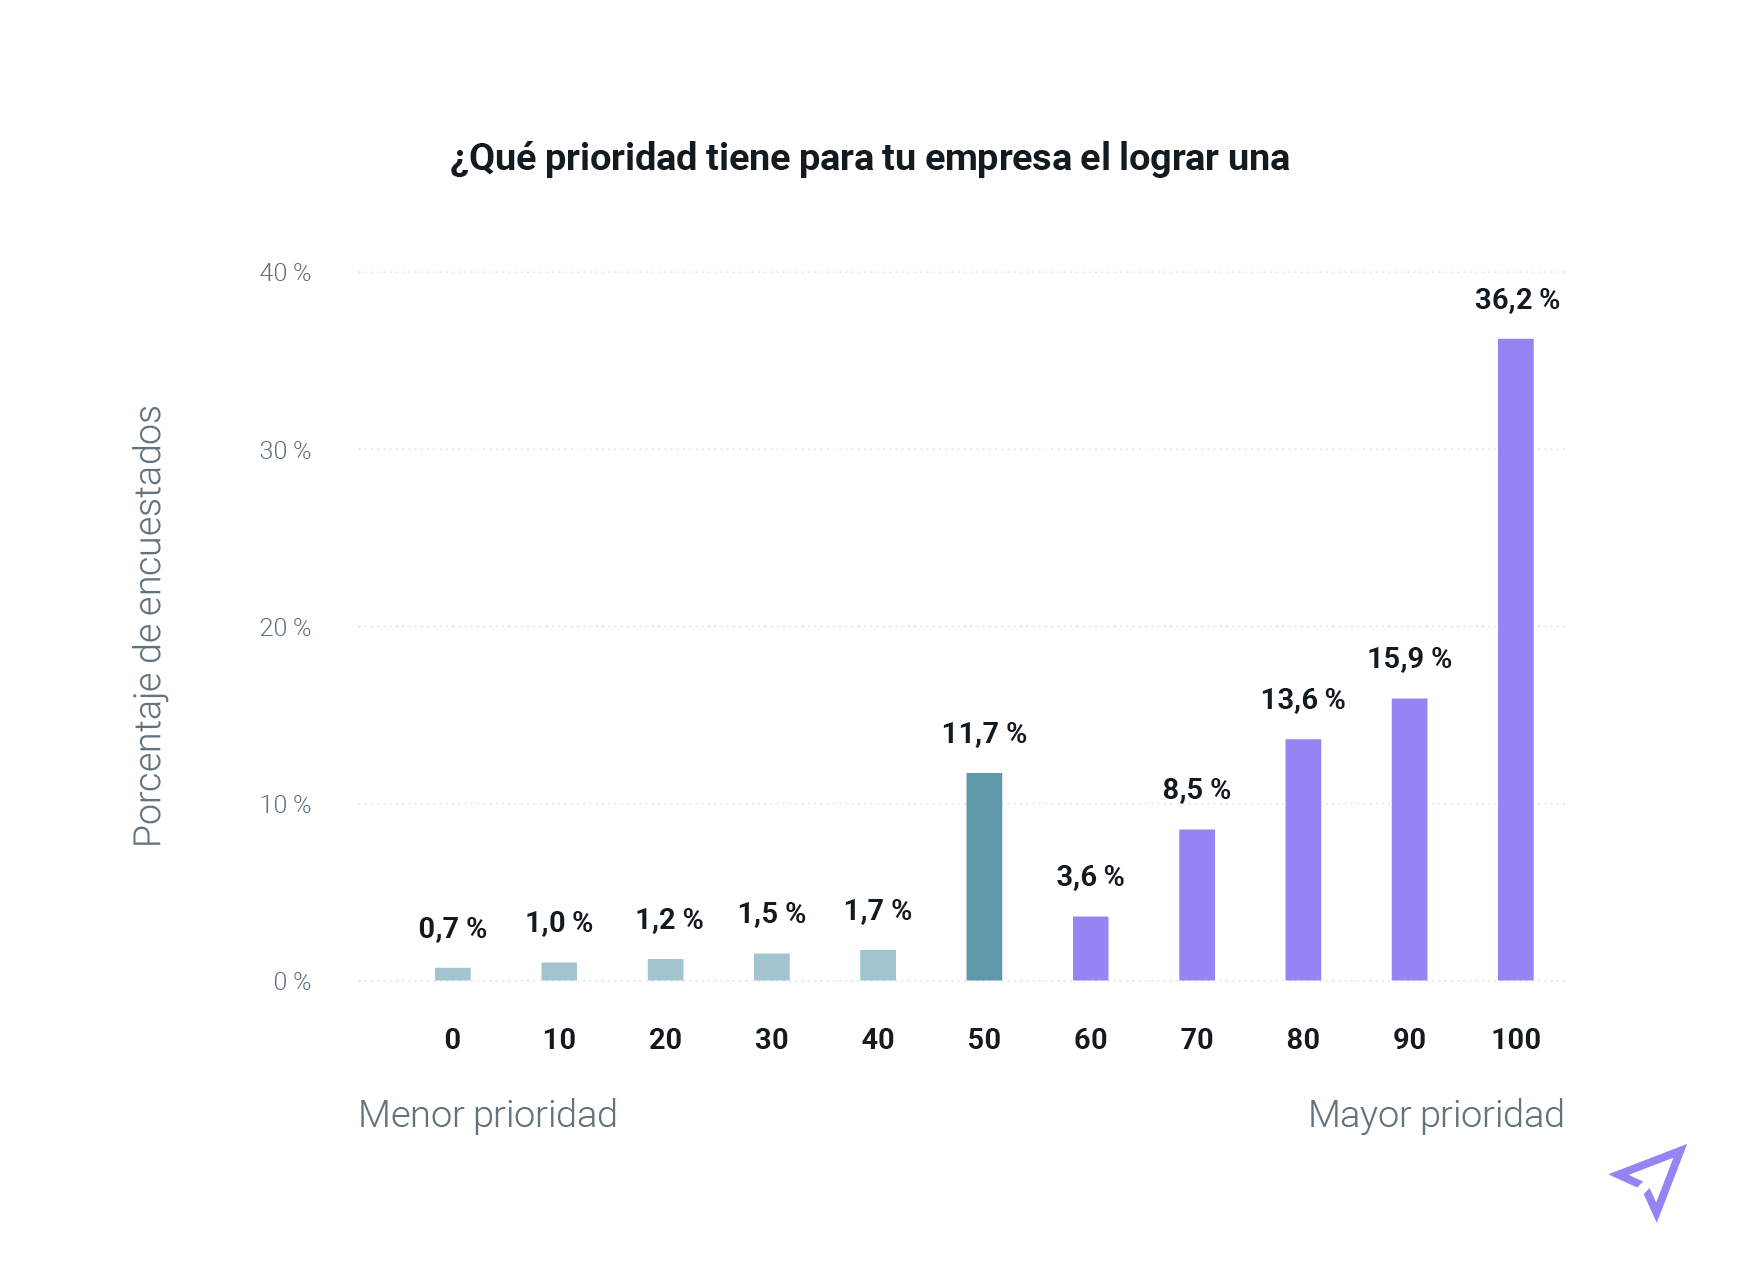 Gráfico de barras que clasifica los niveles de prioridad de la entregabilidad del email